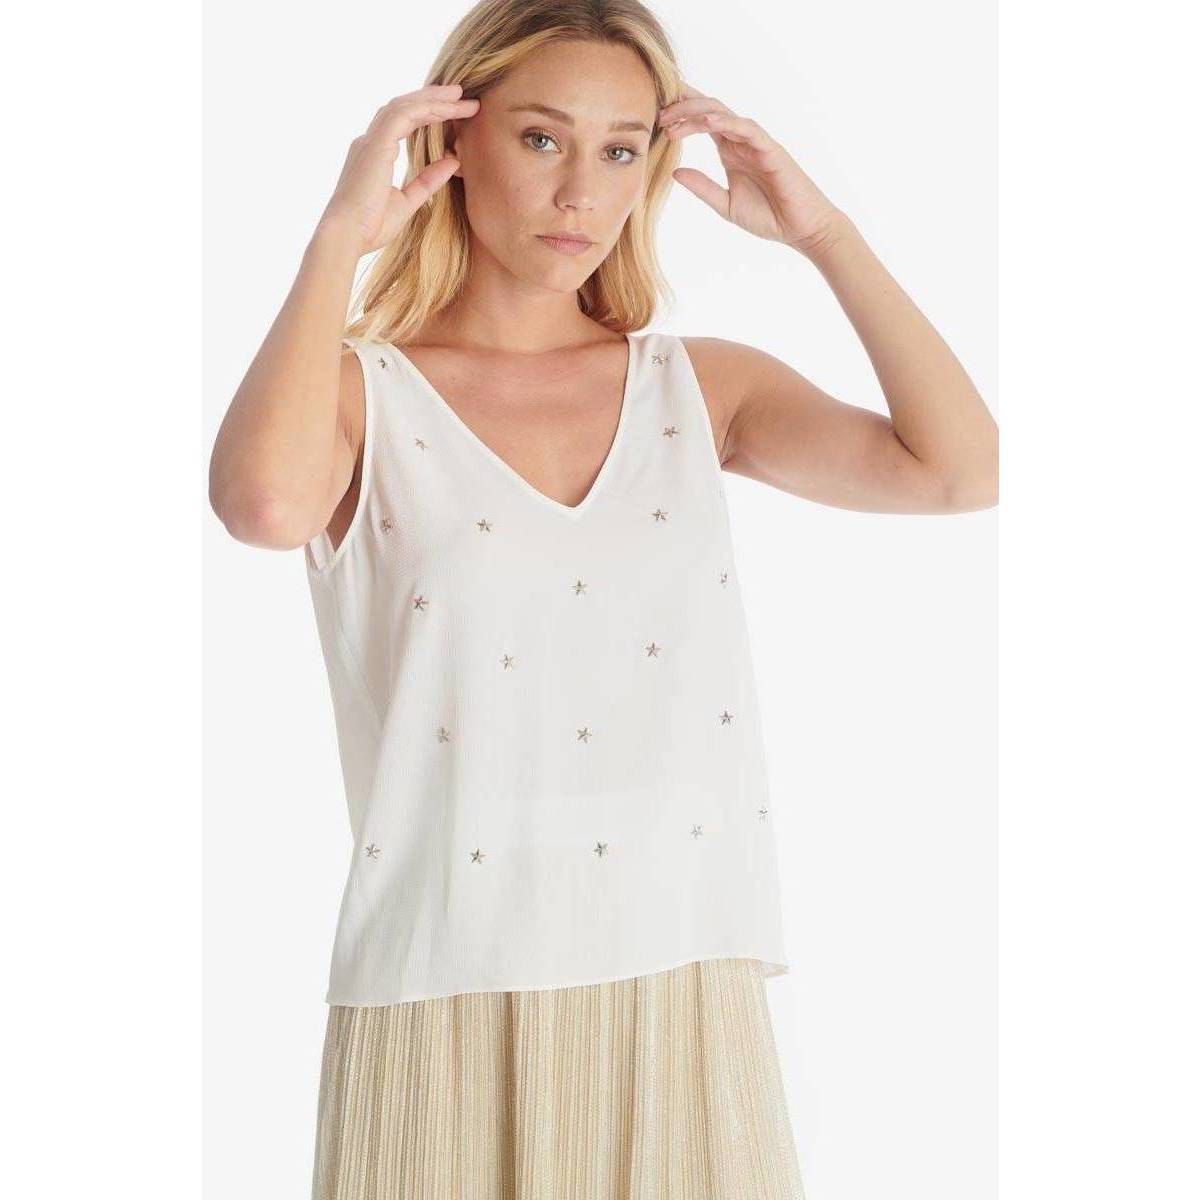 Abbigliamento Donna Top / T-shirt senza maniche Le Temps des Cerises Top FIONI Bianco